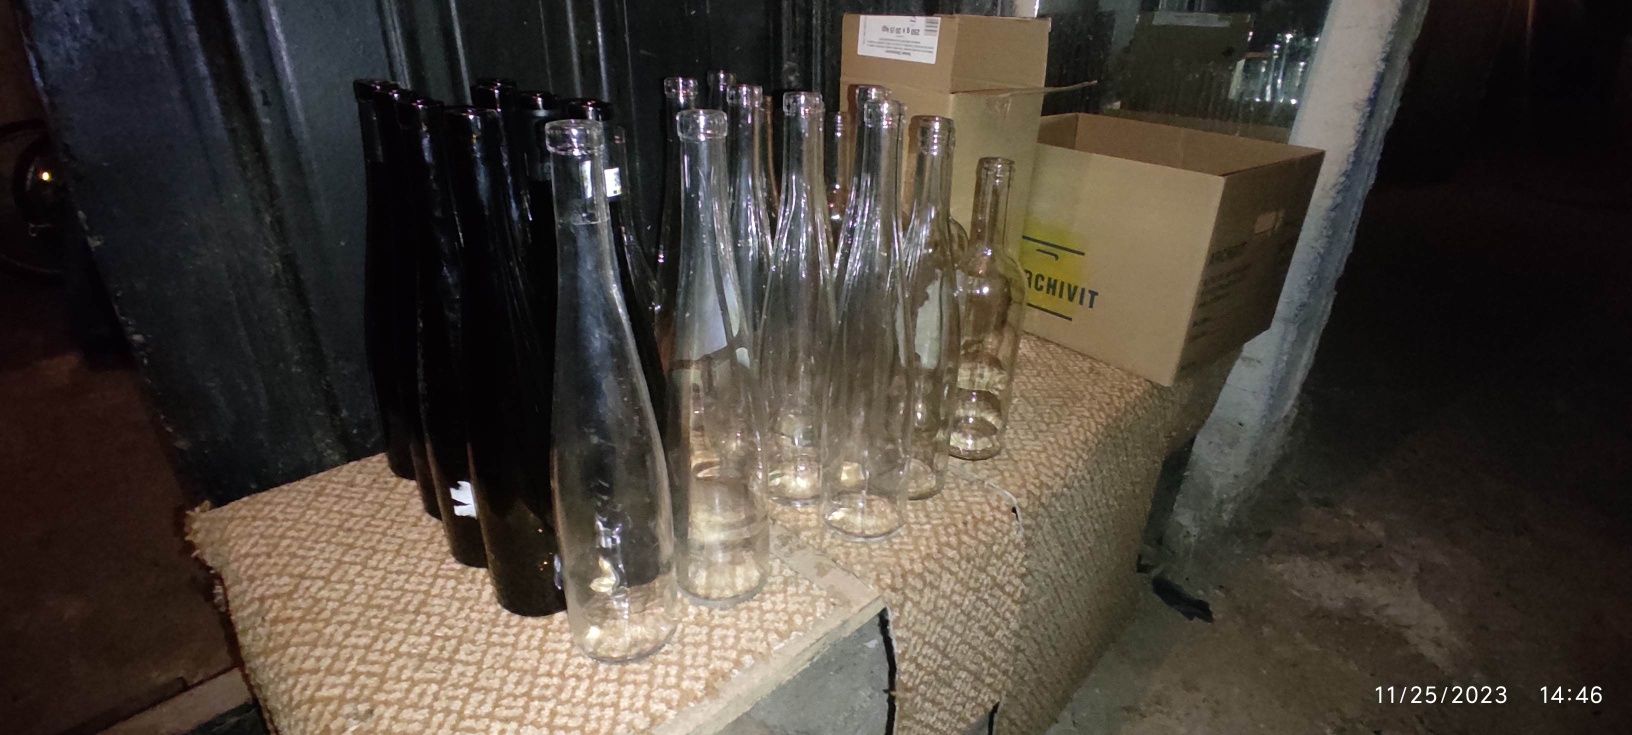 Vand sticle vin 0.75l